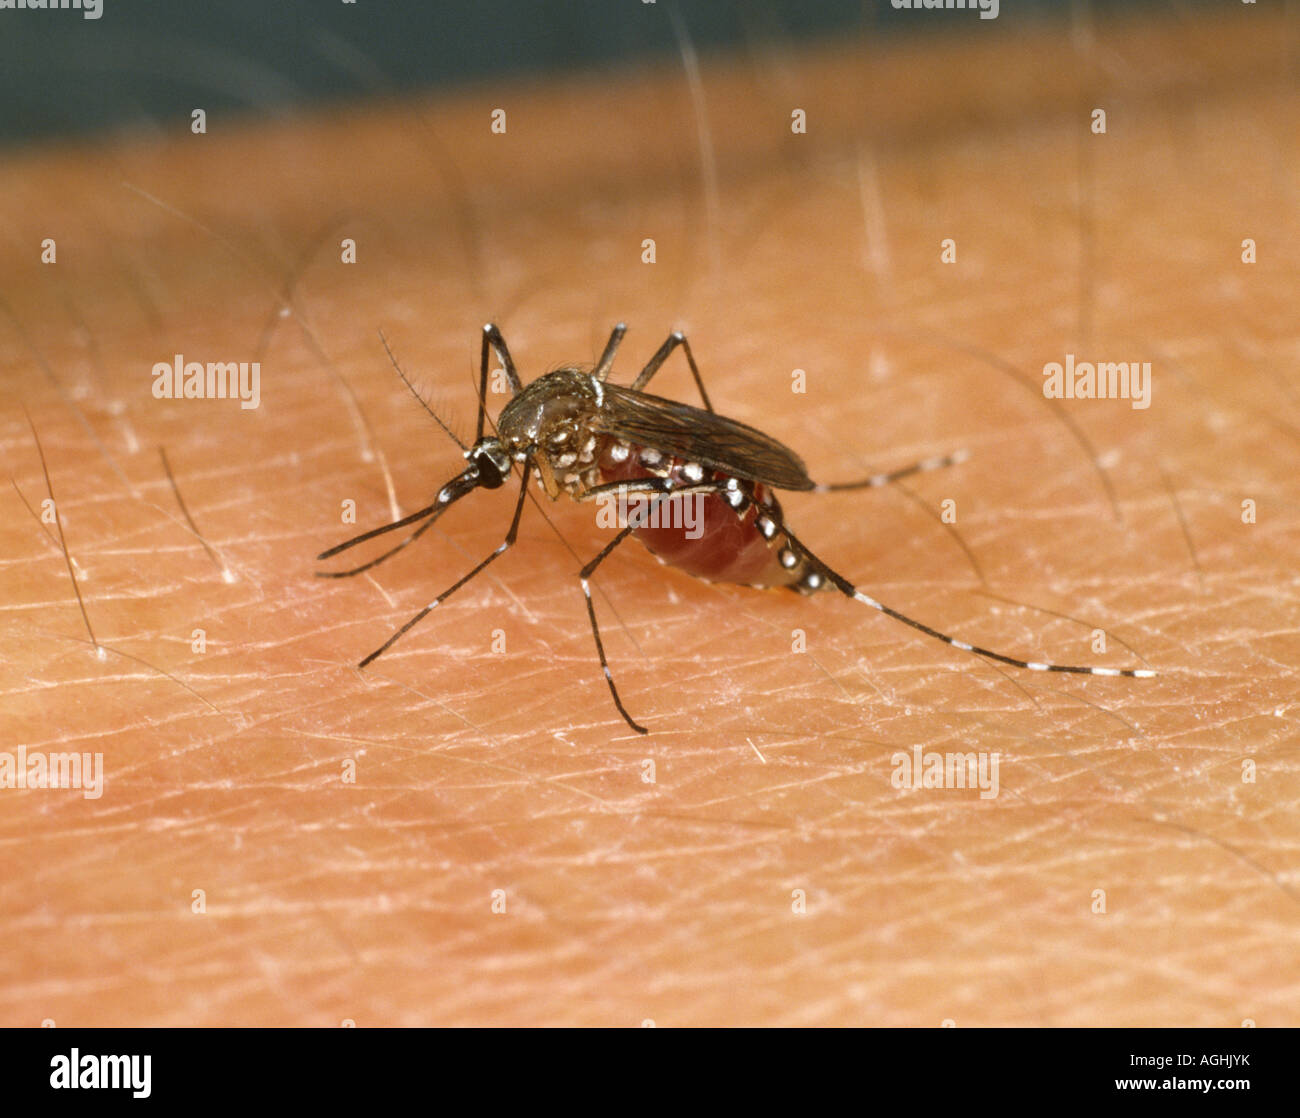 Egyptian mosquito Aedes aegypti feeding on human hand Stock Photo